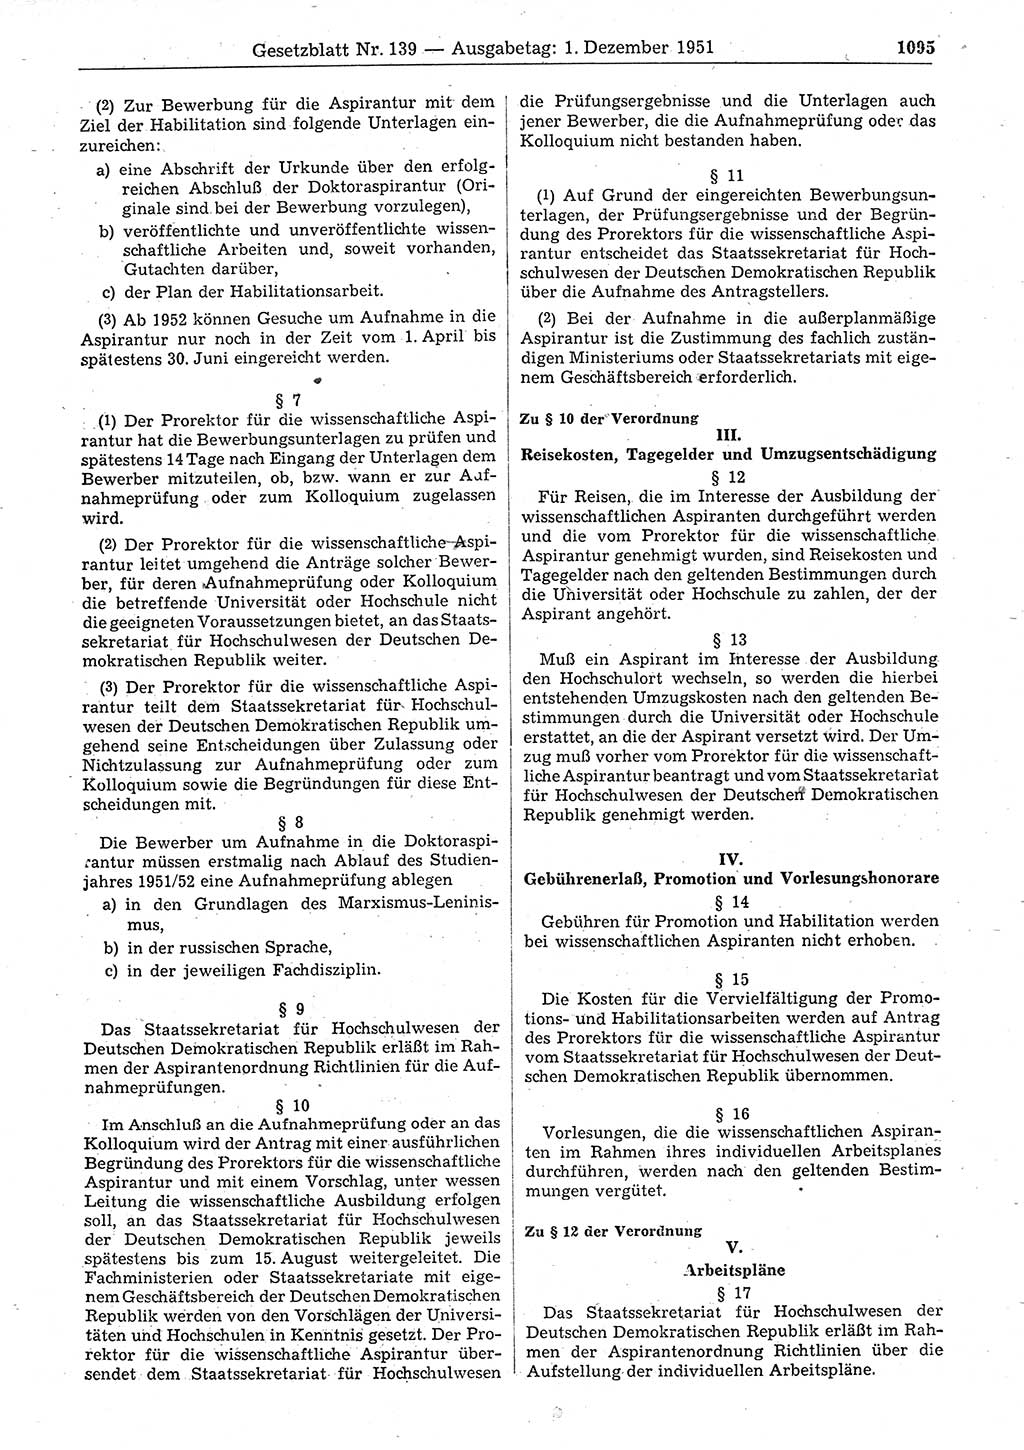 Gesetzblatt (GBl.) der Deutschen Demokratischen Republik (DDR) 1951, Seite 1095 (GBl. DDR 1951, S. 1095)